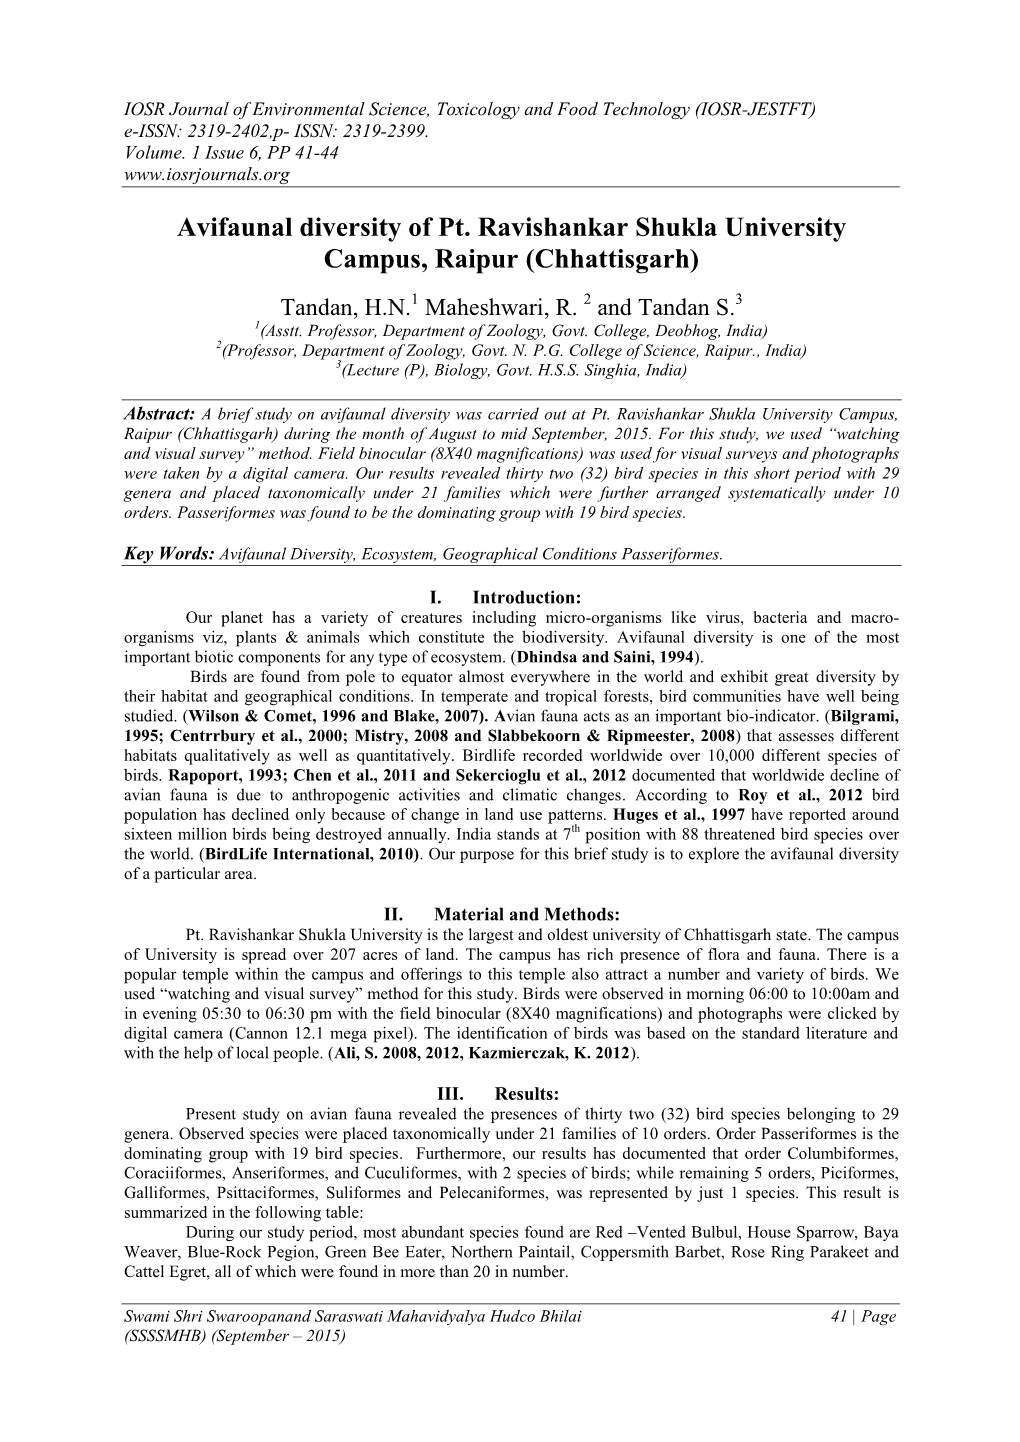 Avifaunal Diversity of Pt. Ravishankar Shukla University Campus, Raipur (Chhattisgarh)